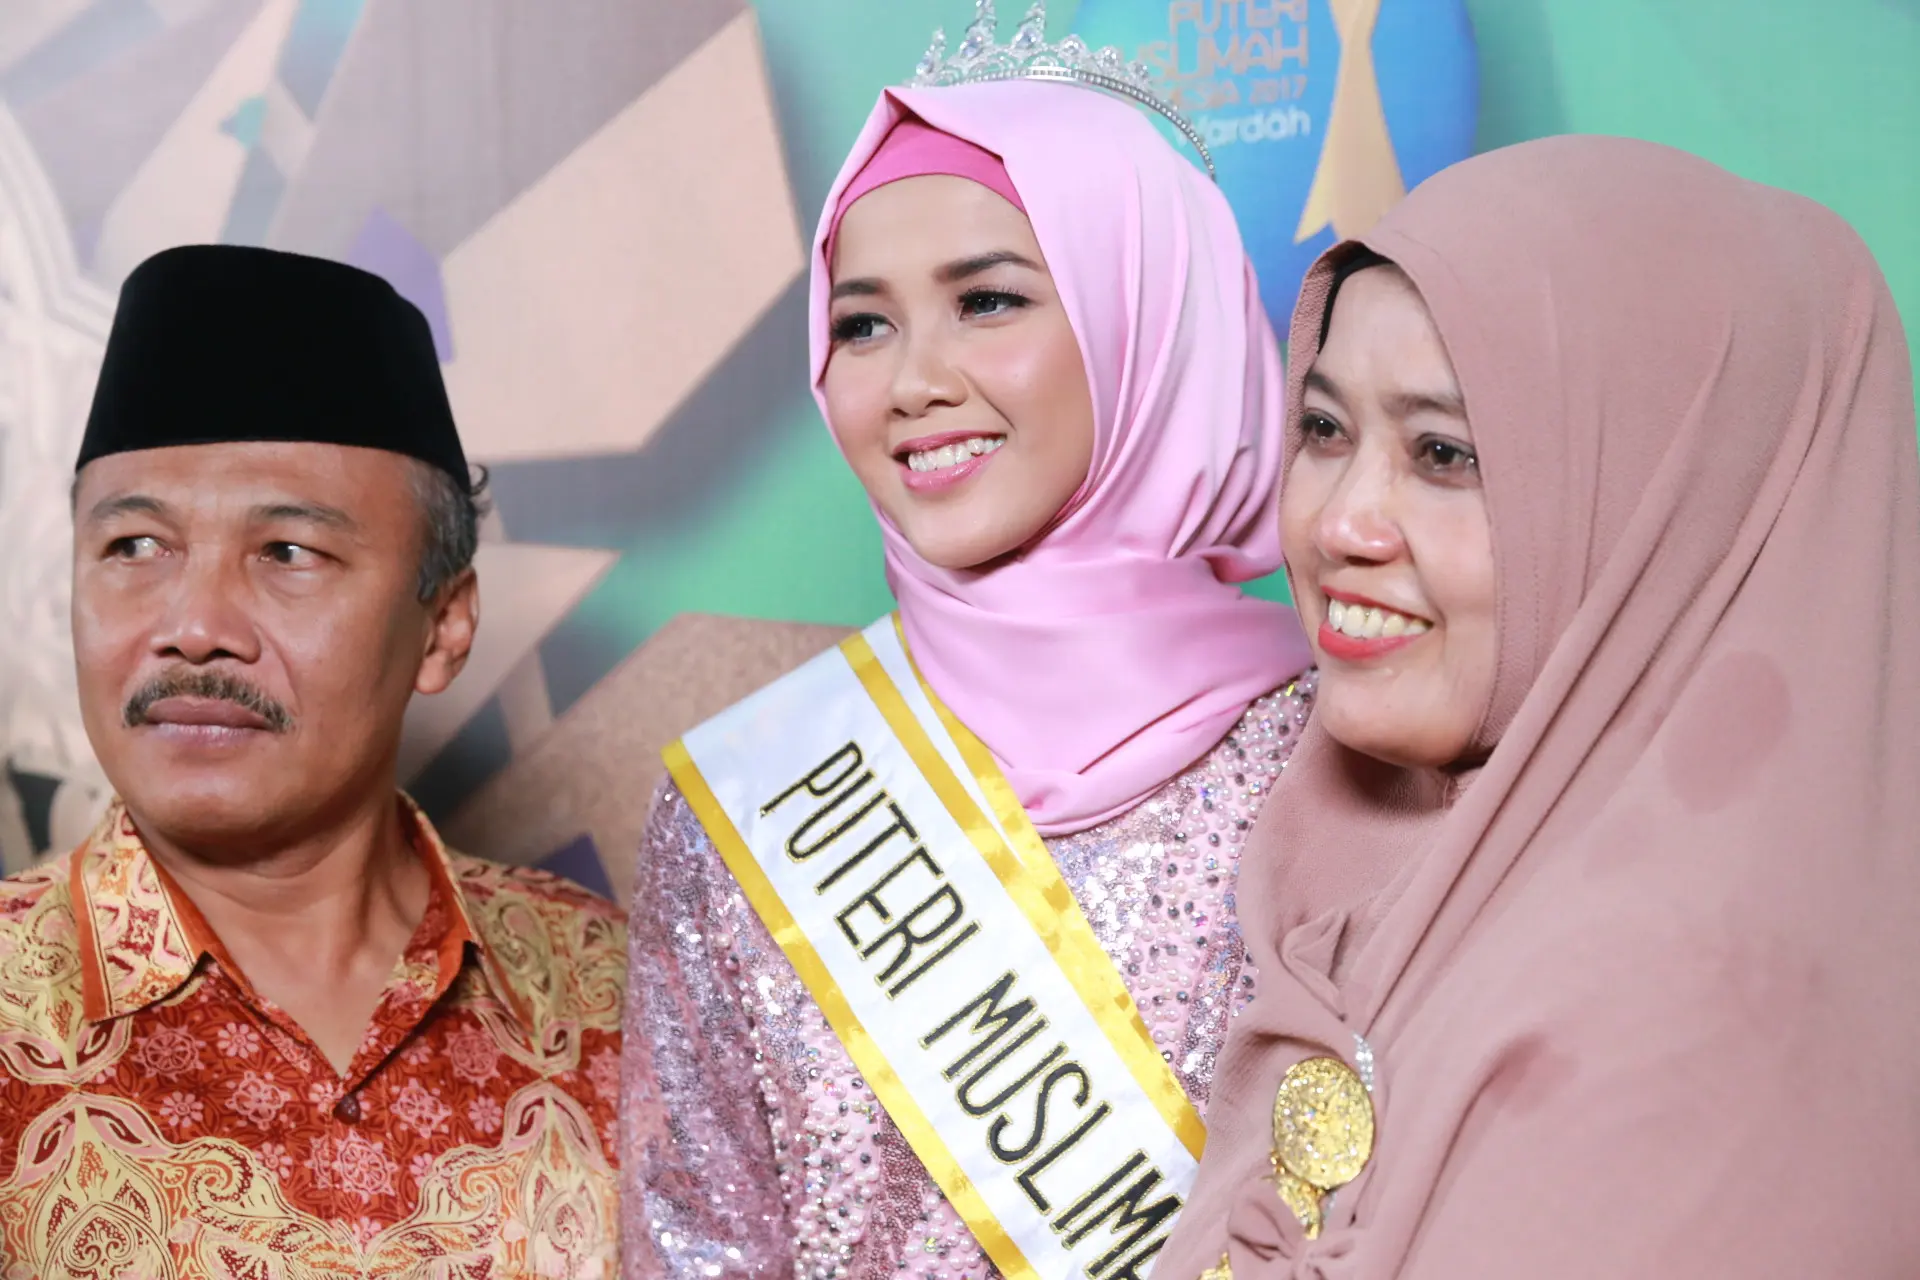 Syifa Fatimah, Puteri Muslimah Indonesia saat bersama kedua orangtuanya. (Adrian Putra/Bintang.com)